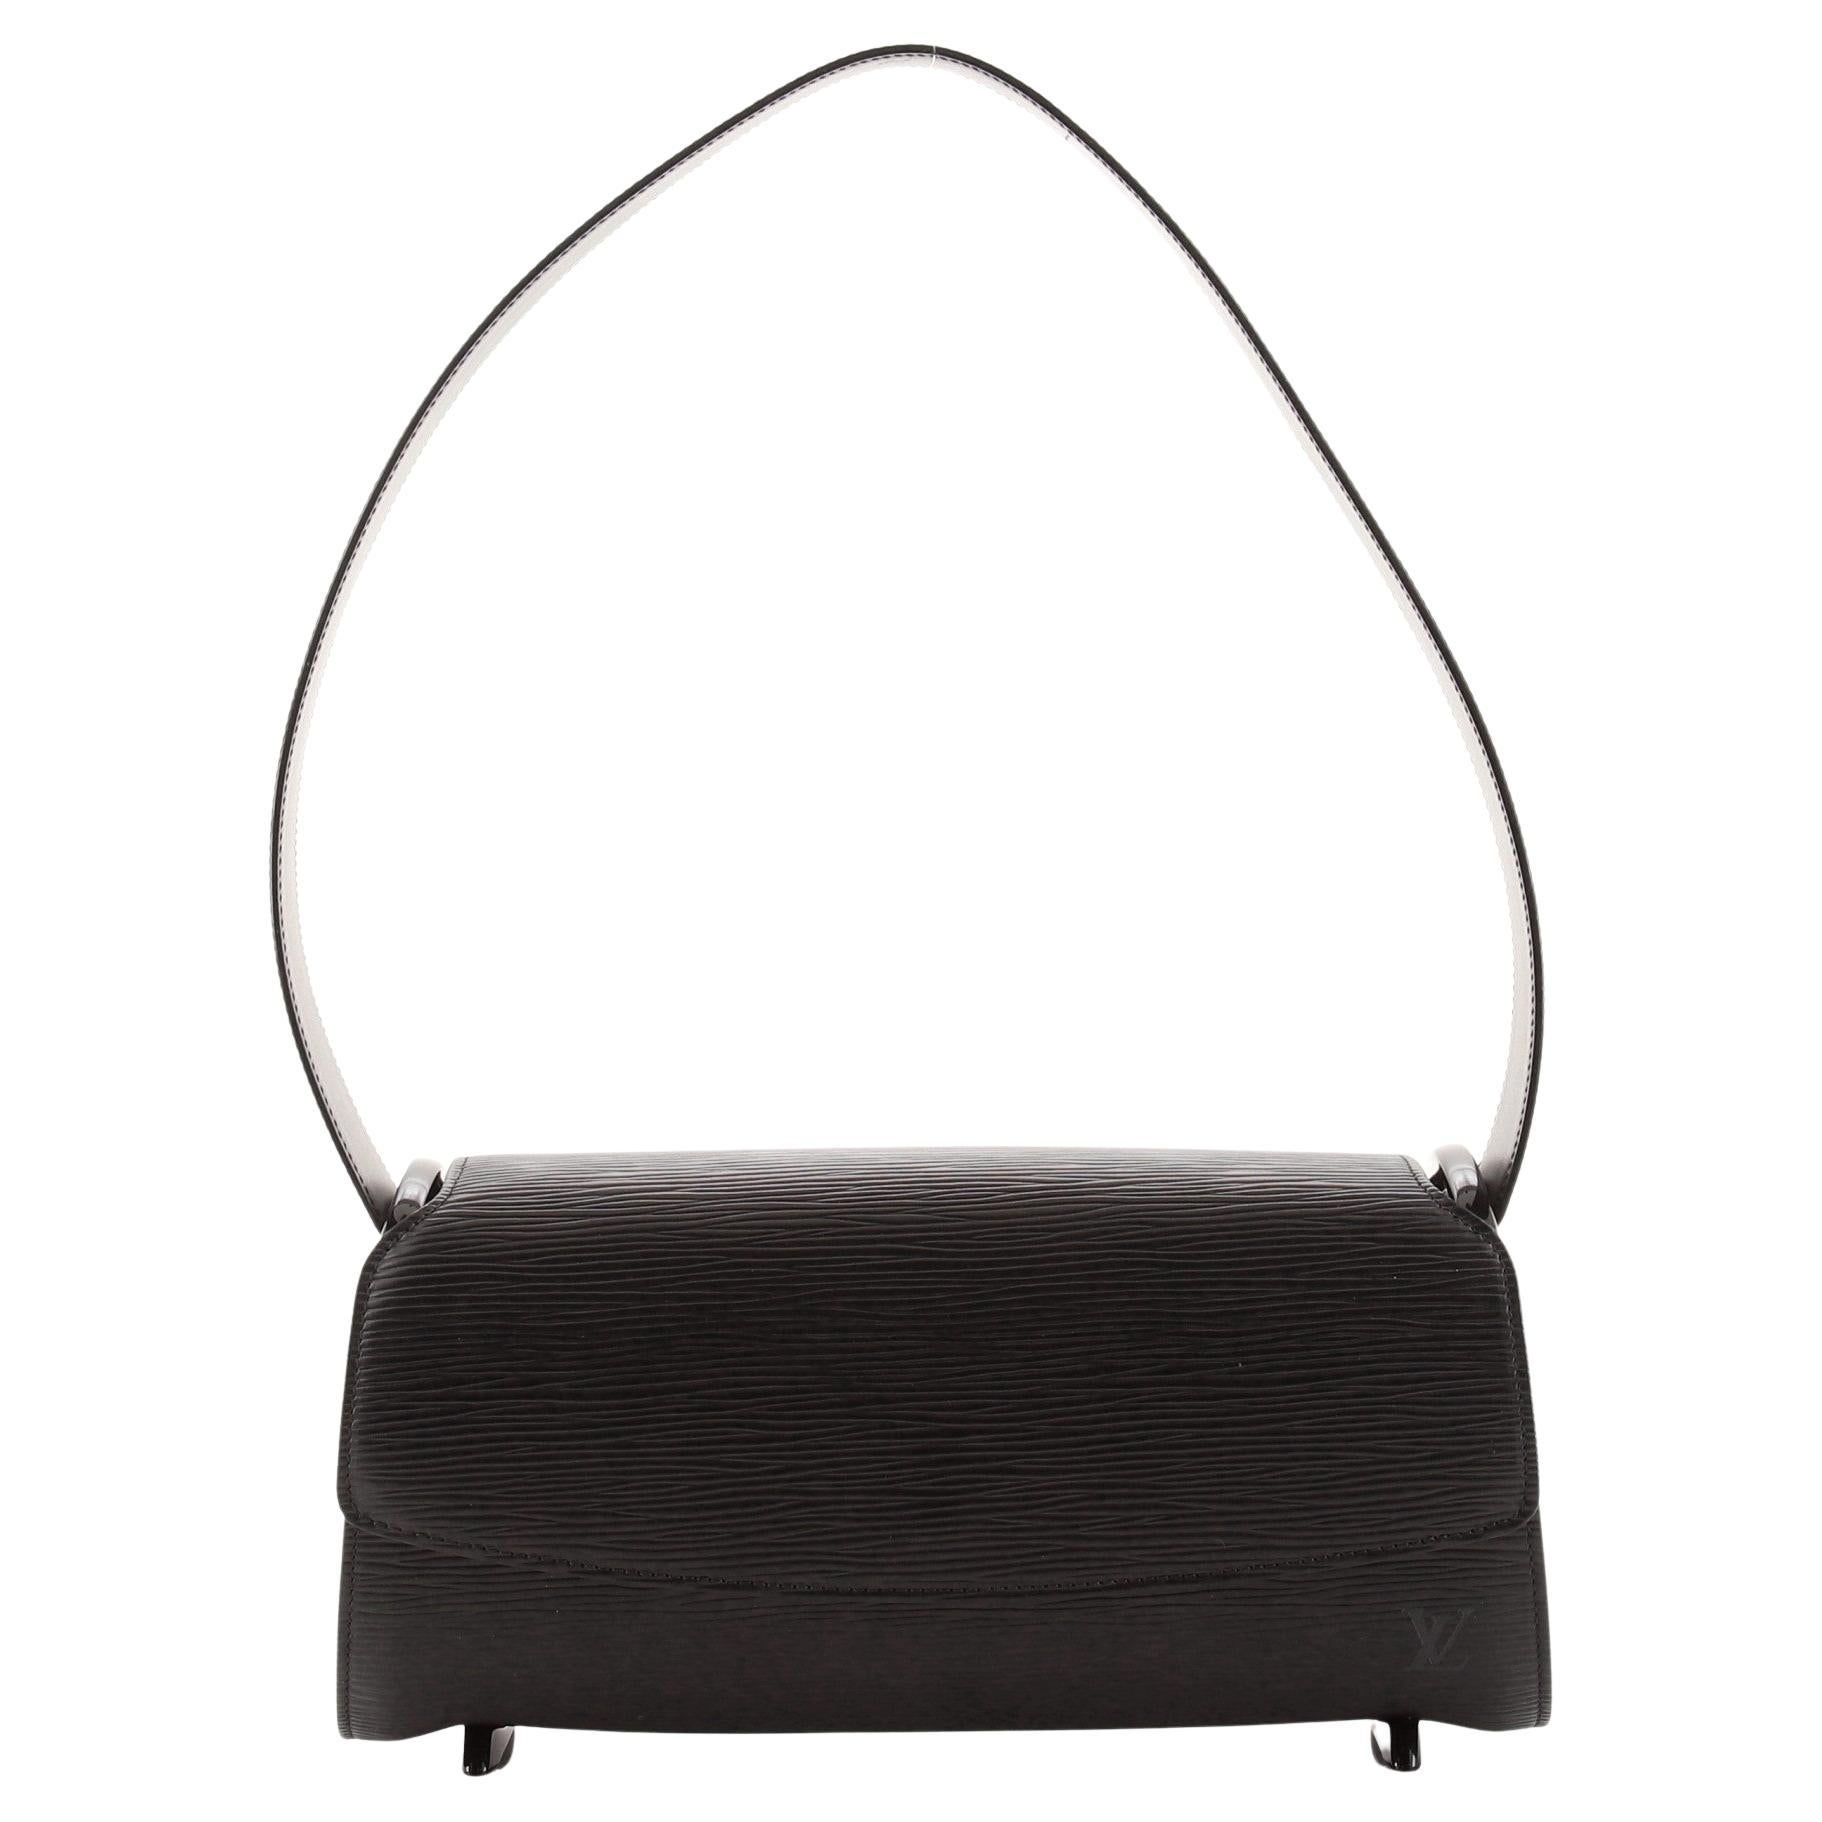 Louis Vuitton Nocturne Handbag Epi Leather PM